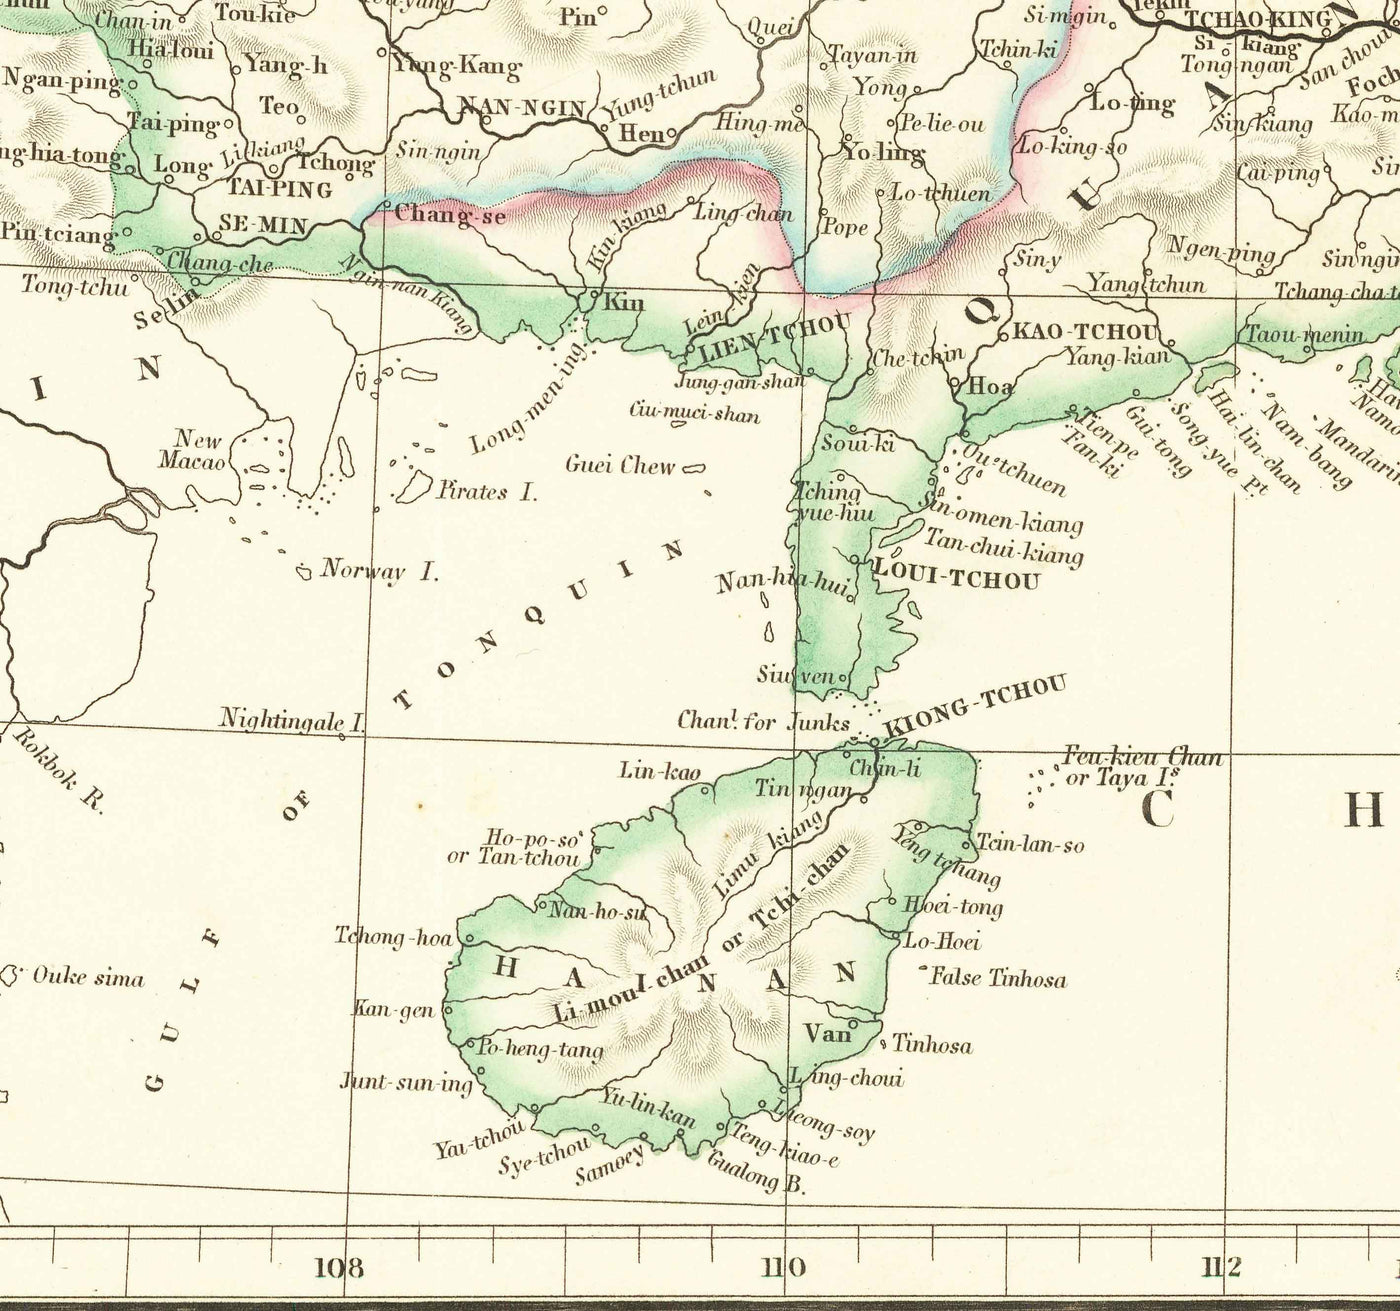 Mapa antiguo de China, 1840 por Arrowsmith - Corea, Cantón, Pekín, Embajada Maccartney Sino-Británica, Emperador Qianlong